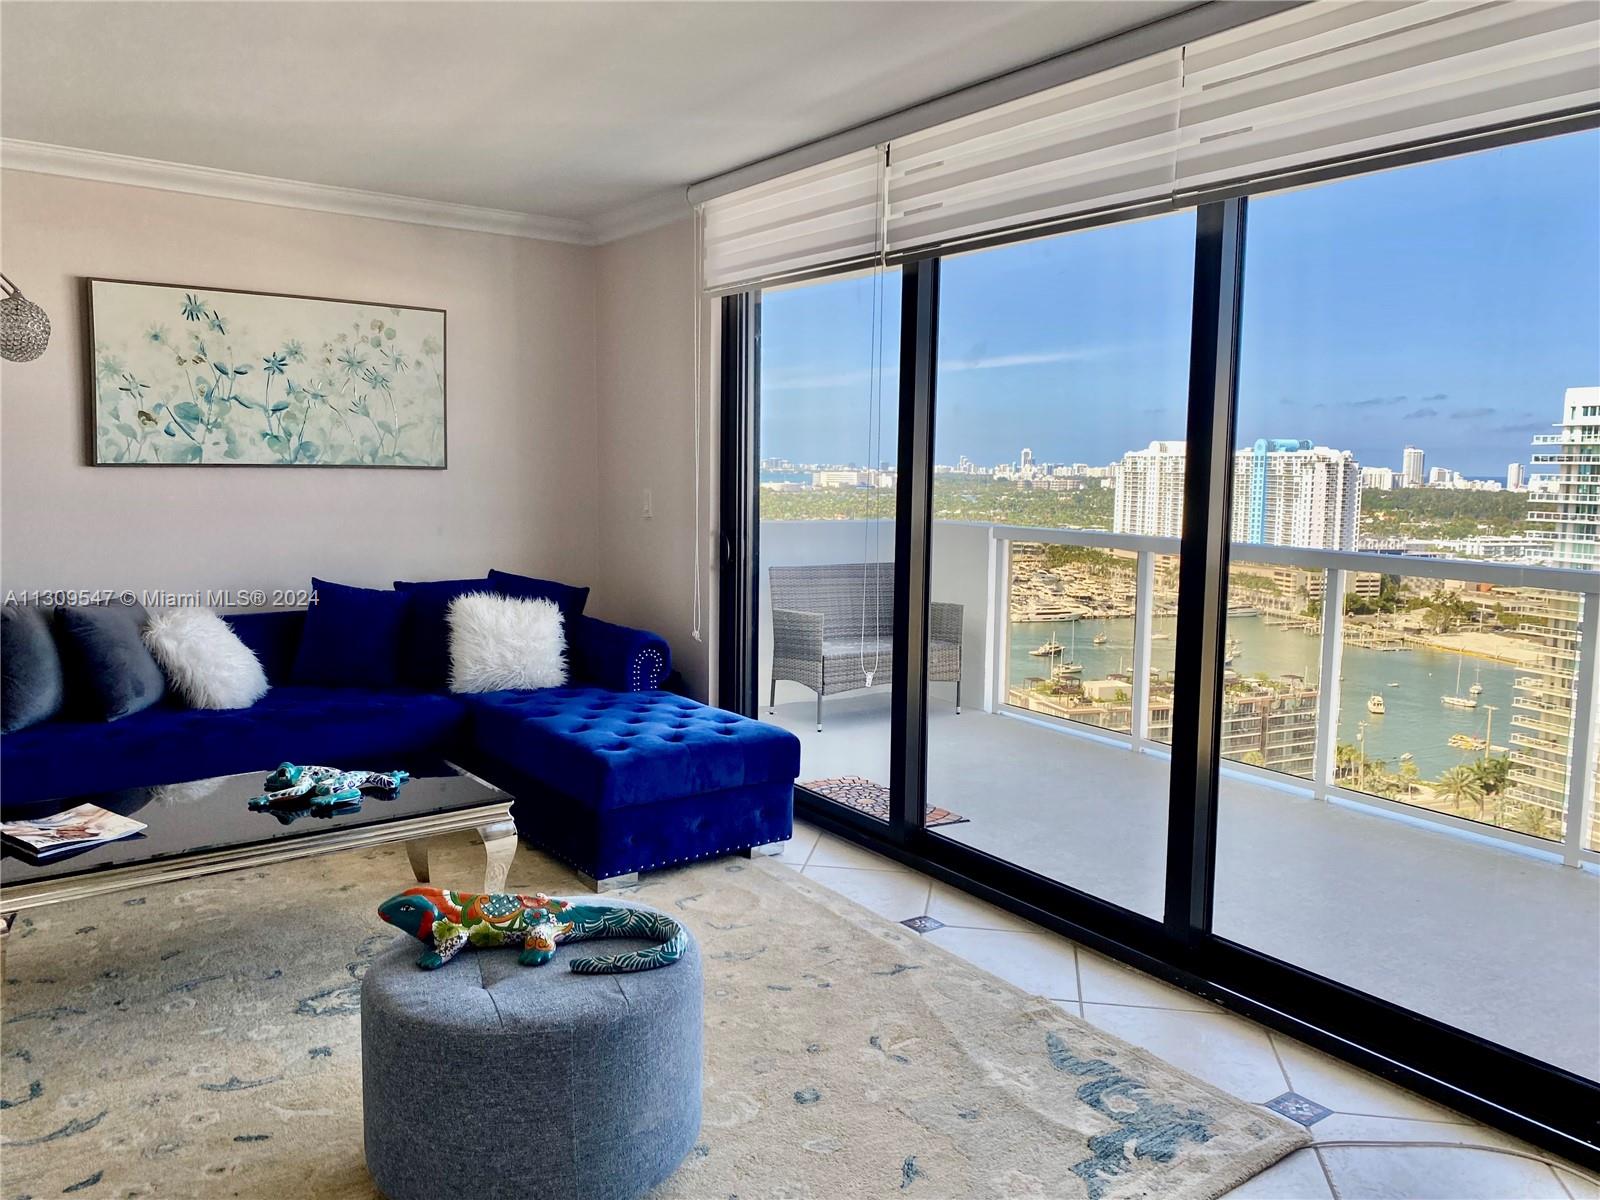 Rental Property at 9 Island Ave 2410, Miami Beach, Miami-Dade County, Florida - Bedrooms: 2 
Bathrooms: 2  - $5,900 MO.